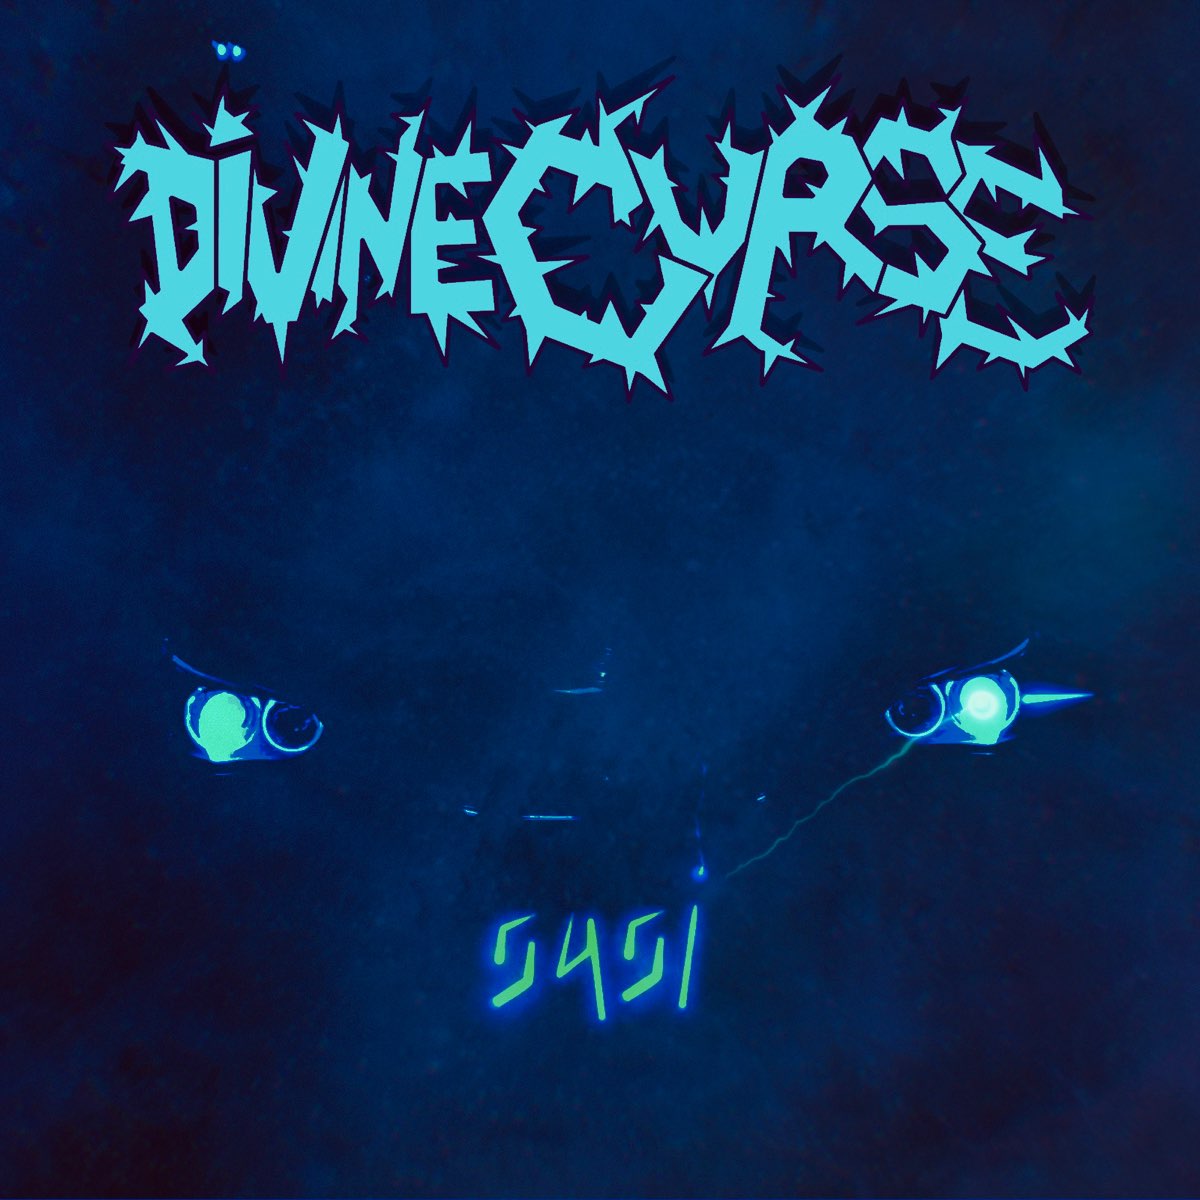 DIVINE CURSE - 545i cover 